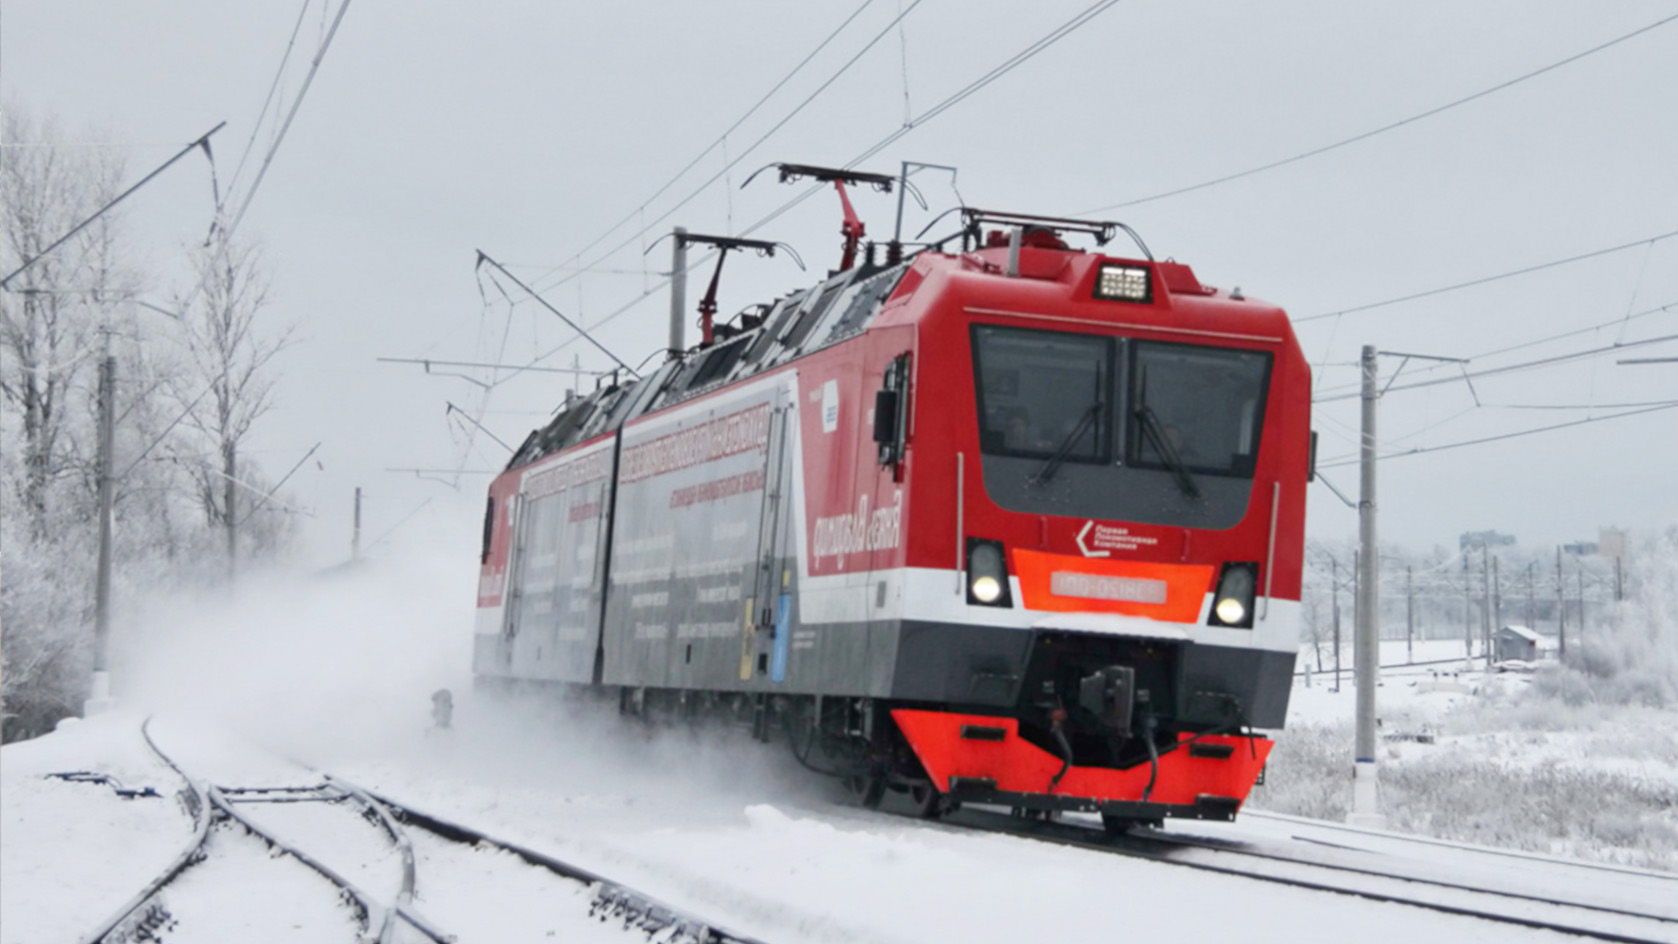 Вагончик тронулся — Энгельсский локомотивный завод купила московская компания со своим железнодорожным парком